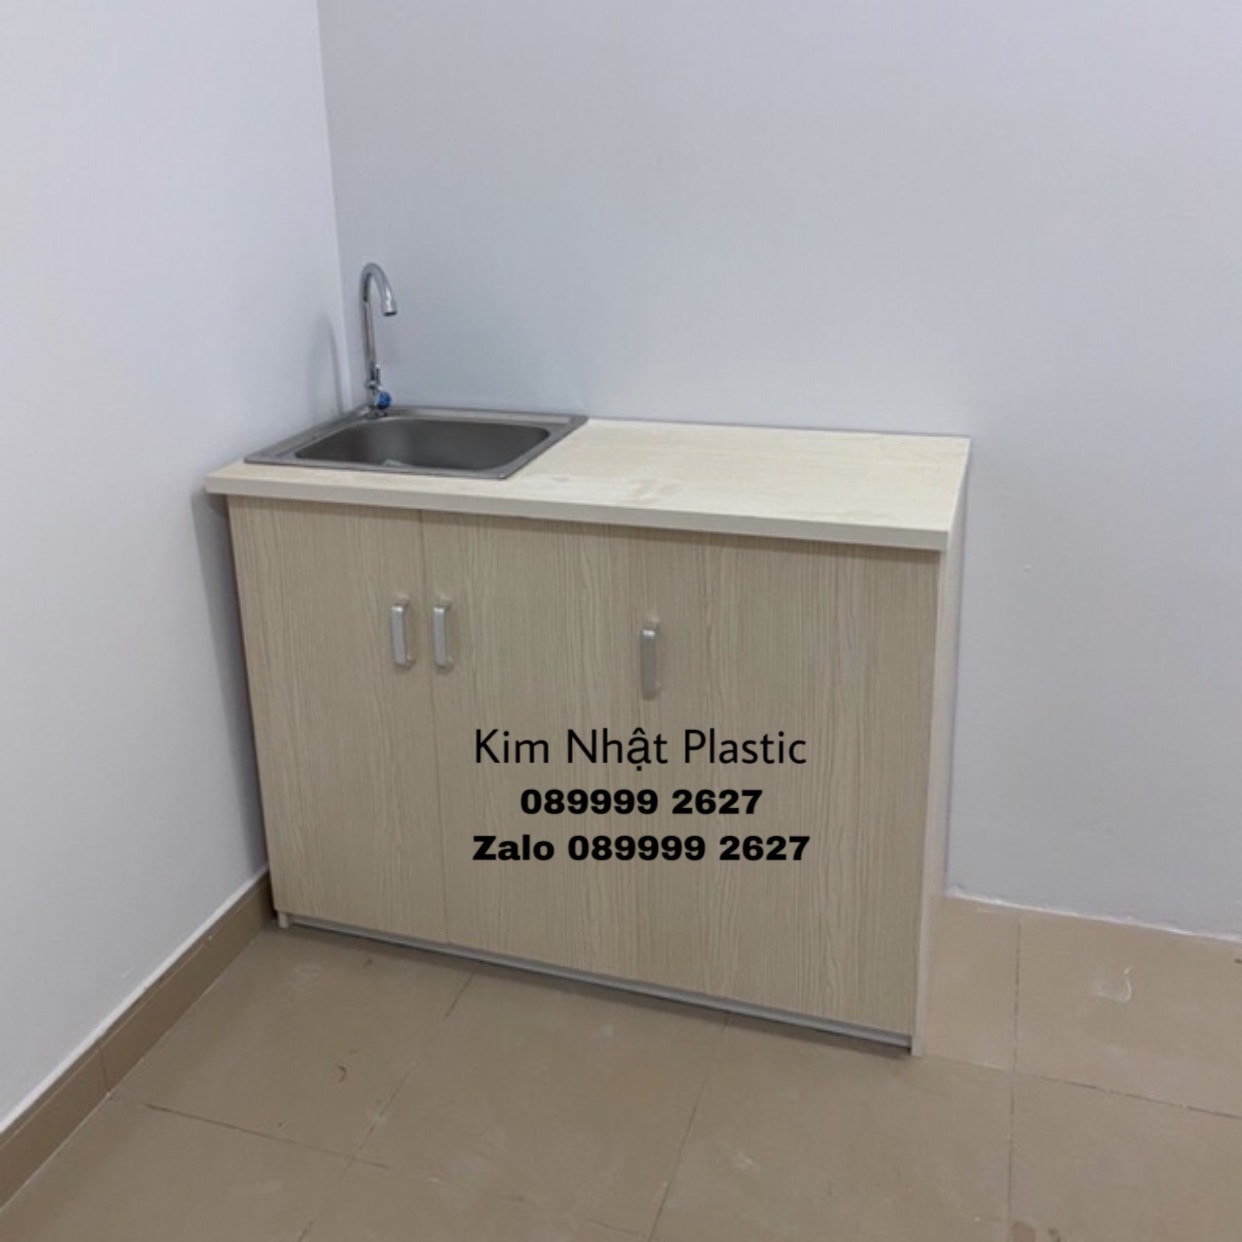 HCM]Tủ bếp mini nhựa Đài Loan có bồn rửa PHỜ RY SHIP | Lazada.vn